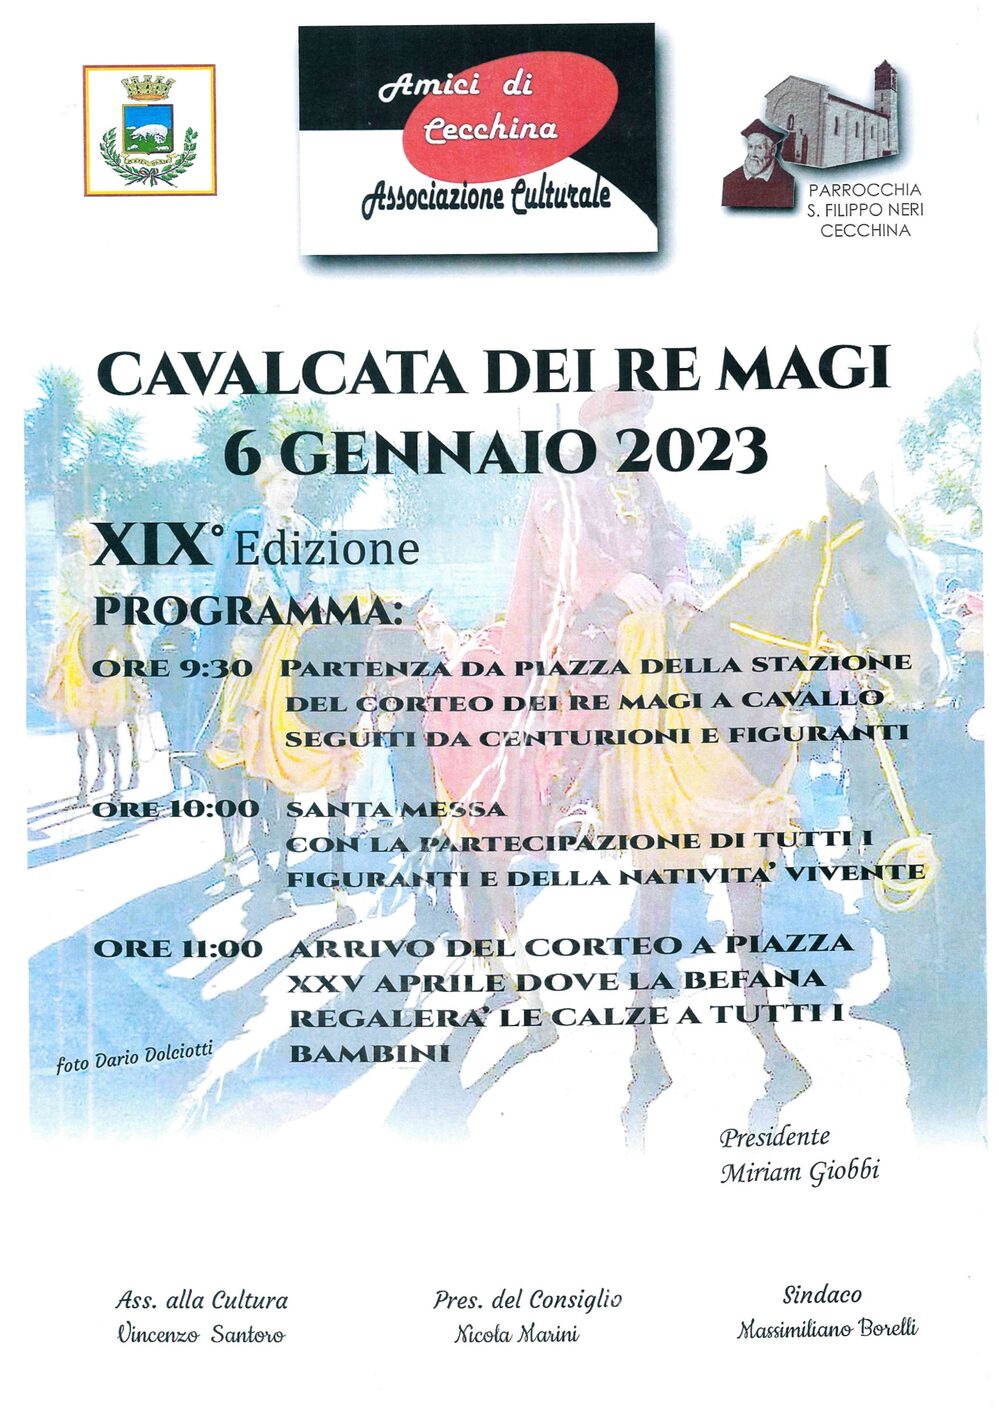 Immagine Cavalcata dei Re Magi - 06 Gennaio 2023